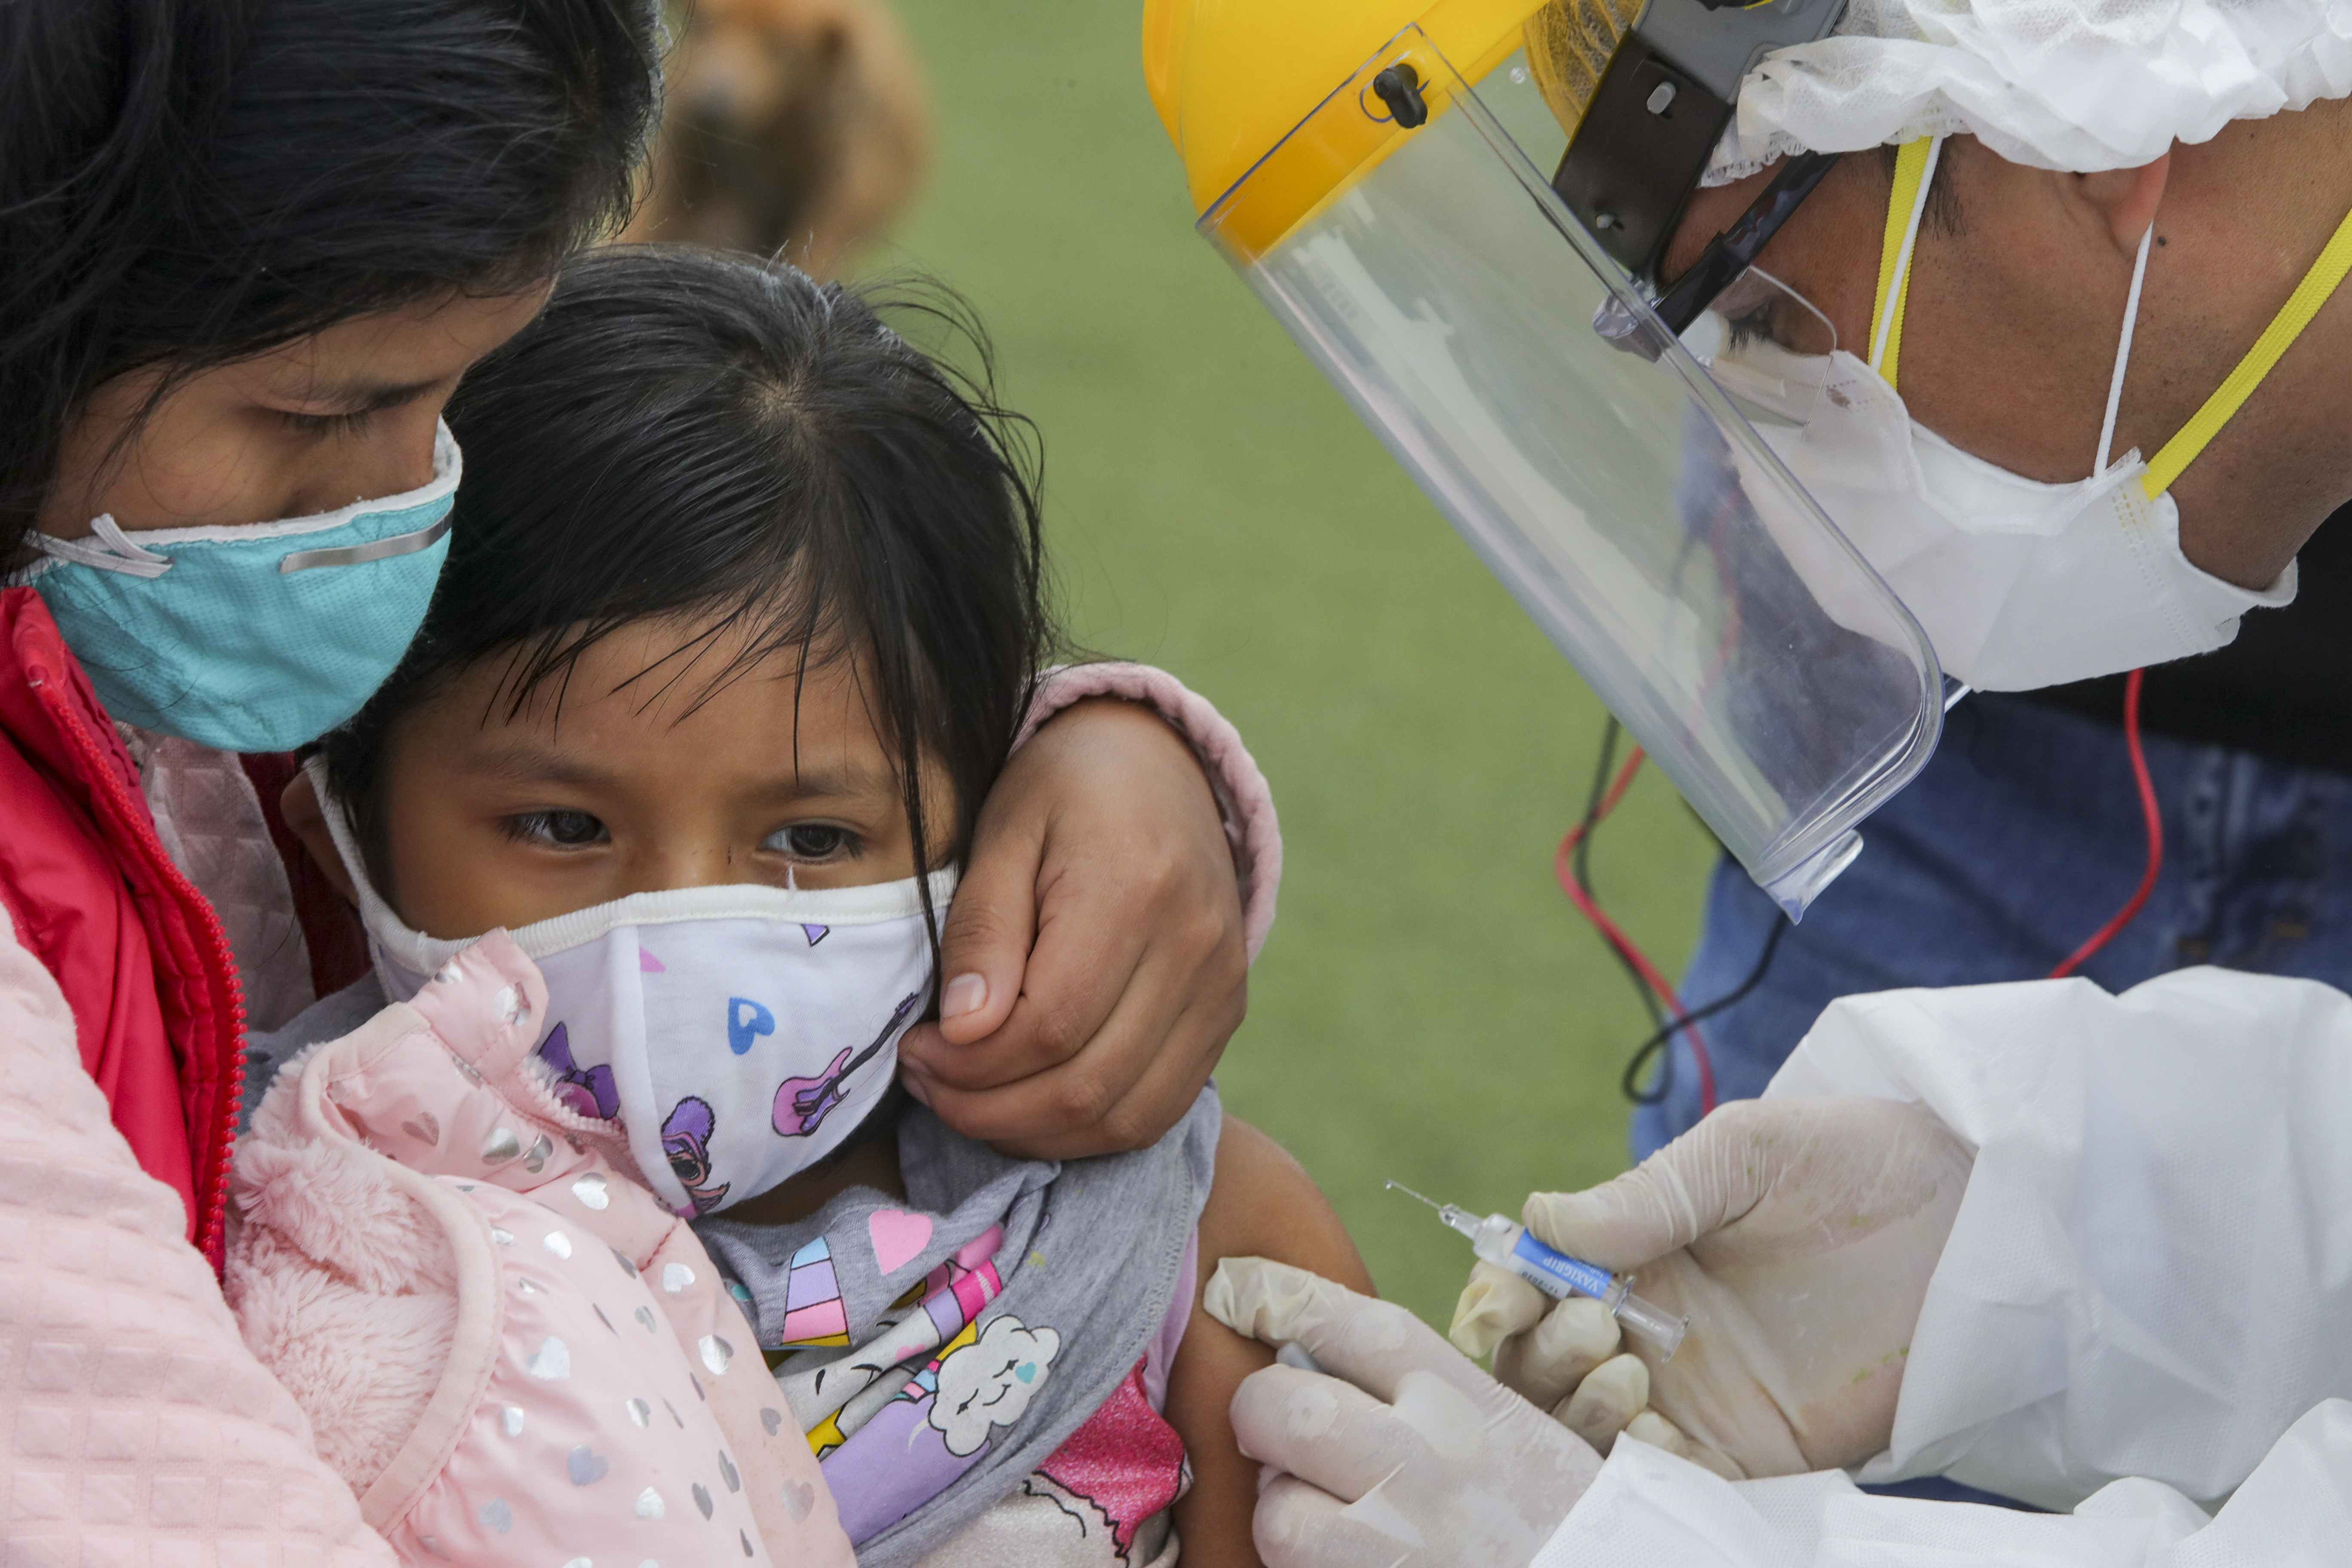 La imagen muestra una niña en brazos de su brazo con una enfermedad y un hombre poniéndole una vacuna en el brazo. 